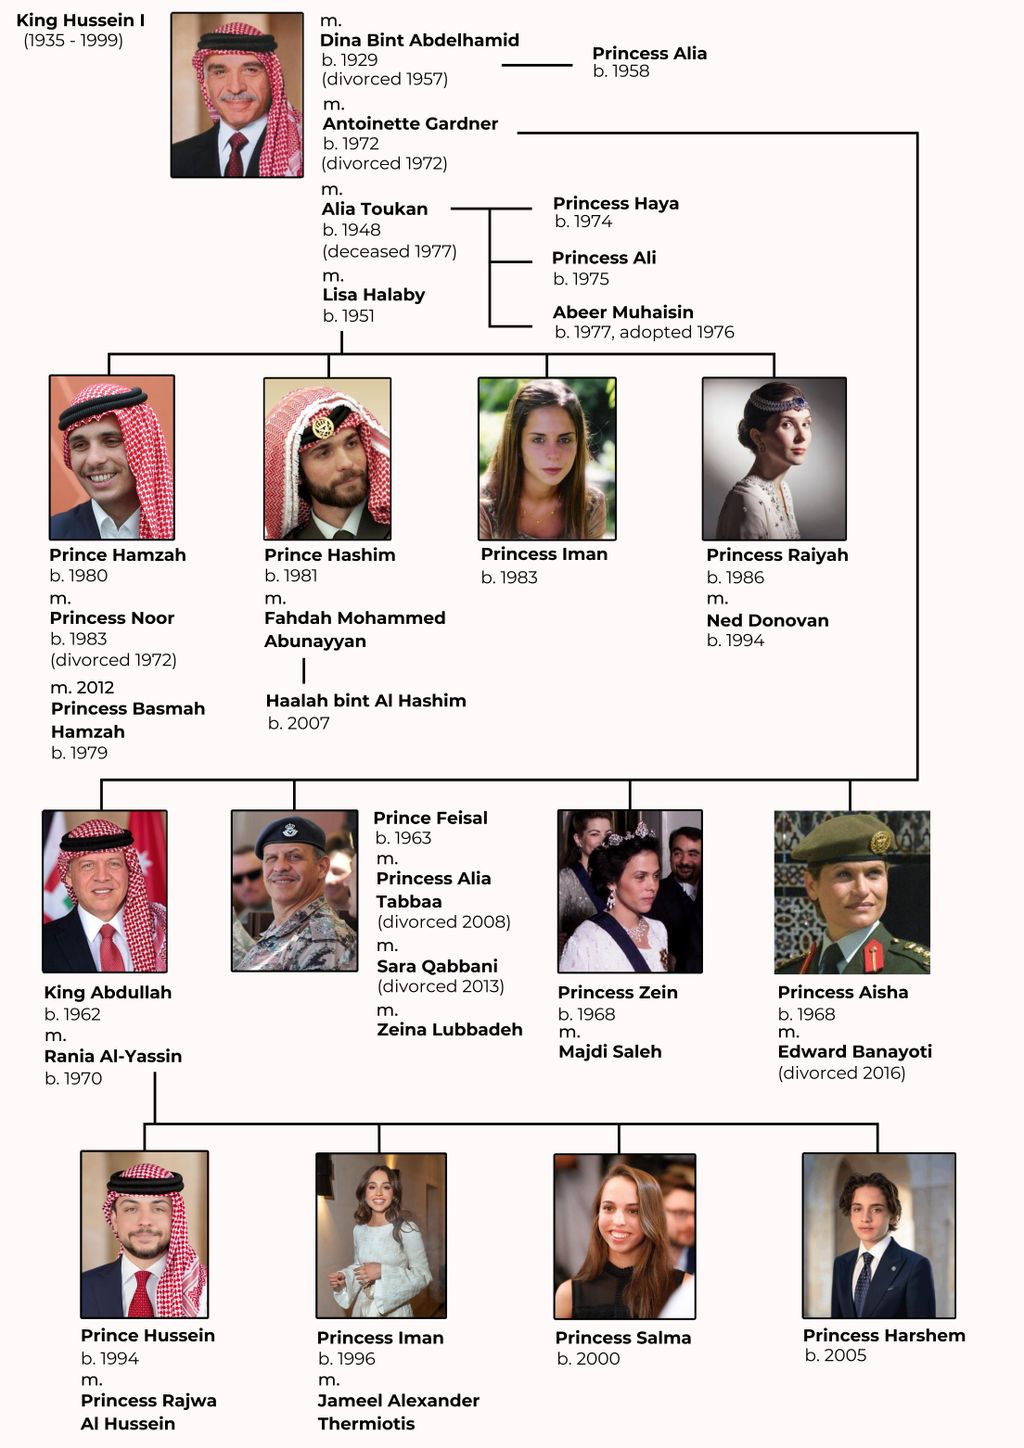 https://images.hellomagazine.com/horizon/original_aspect_ratio/53e7e4c64e40-the-jordan-royal-family-tree-jpg.jpg